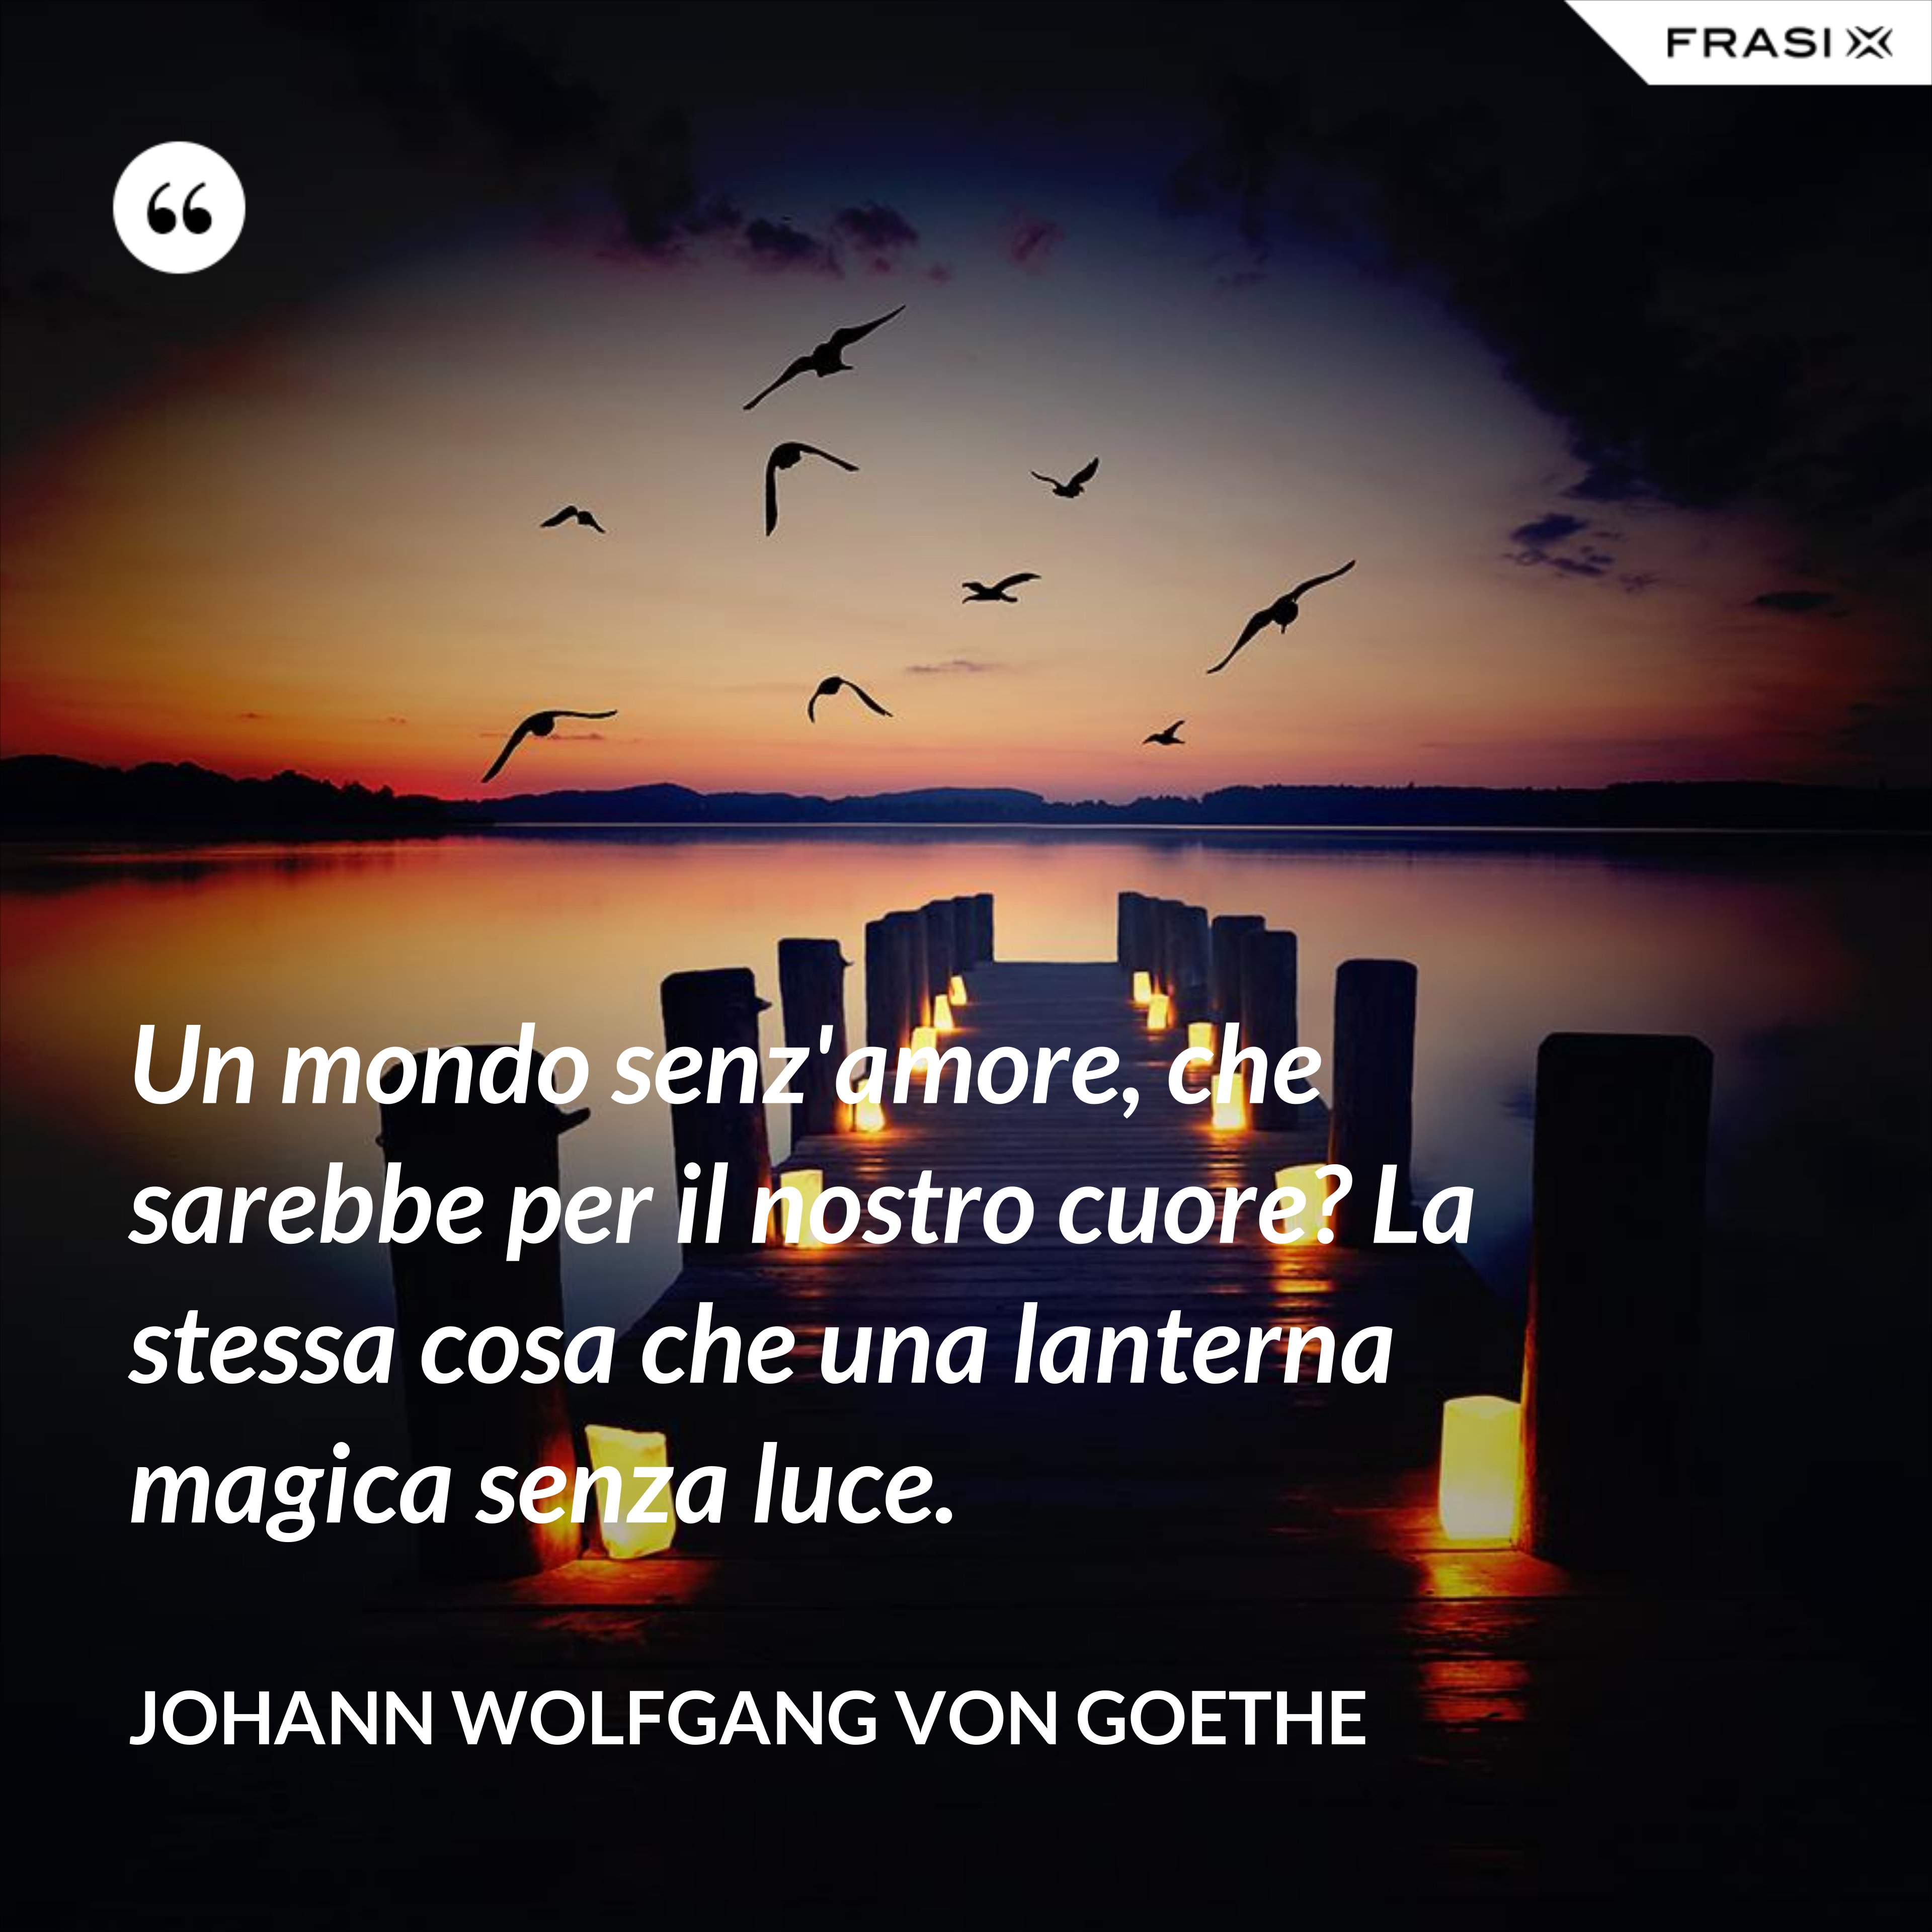 Un mondo senz'amore, che sarebbe per il nostro cuore? La stessa cosa che una lanterna magica senza luce. - Johann Wolfgang von Goethe